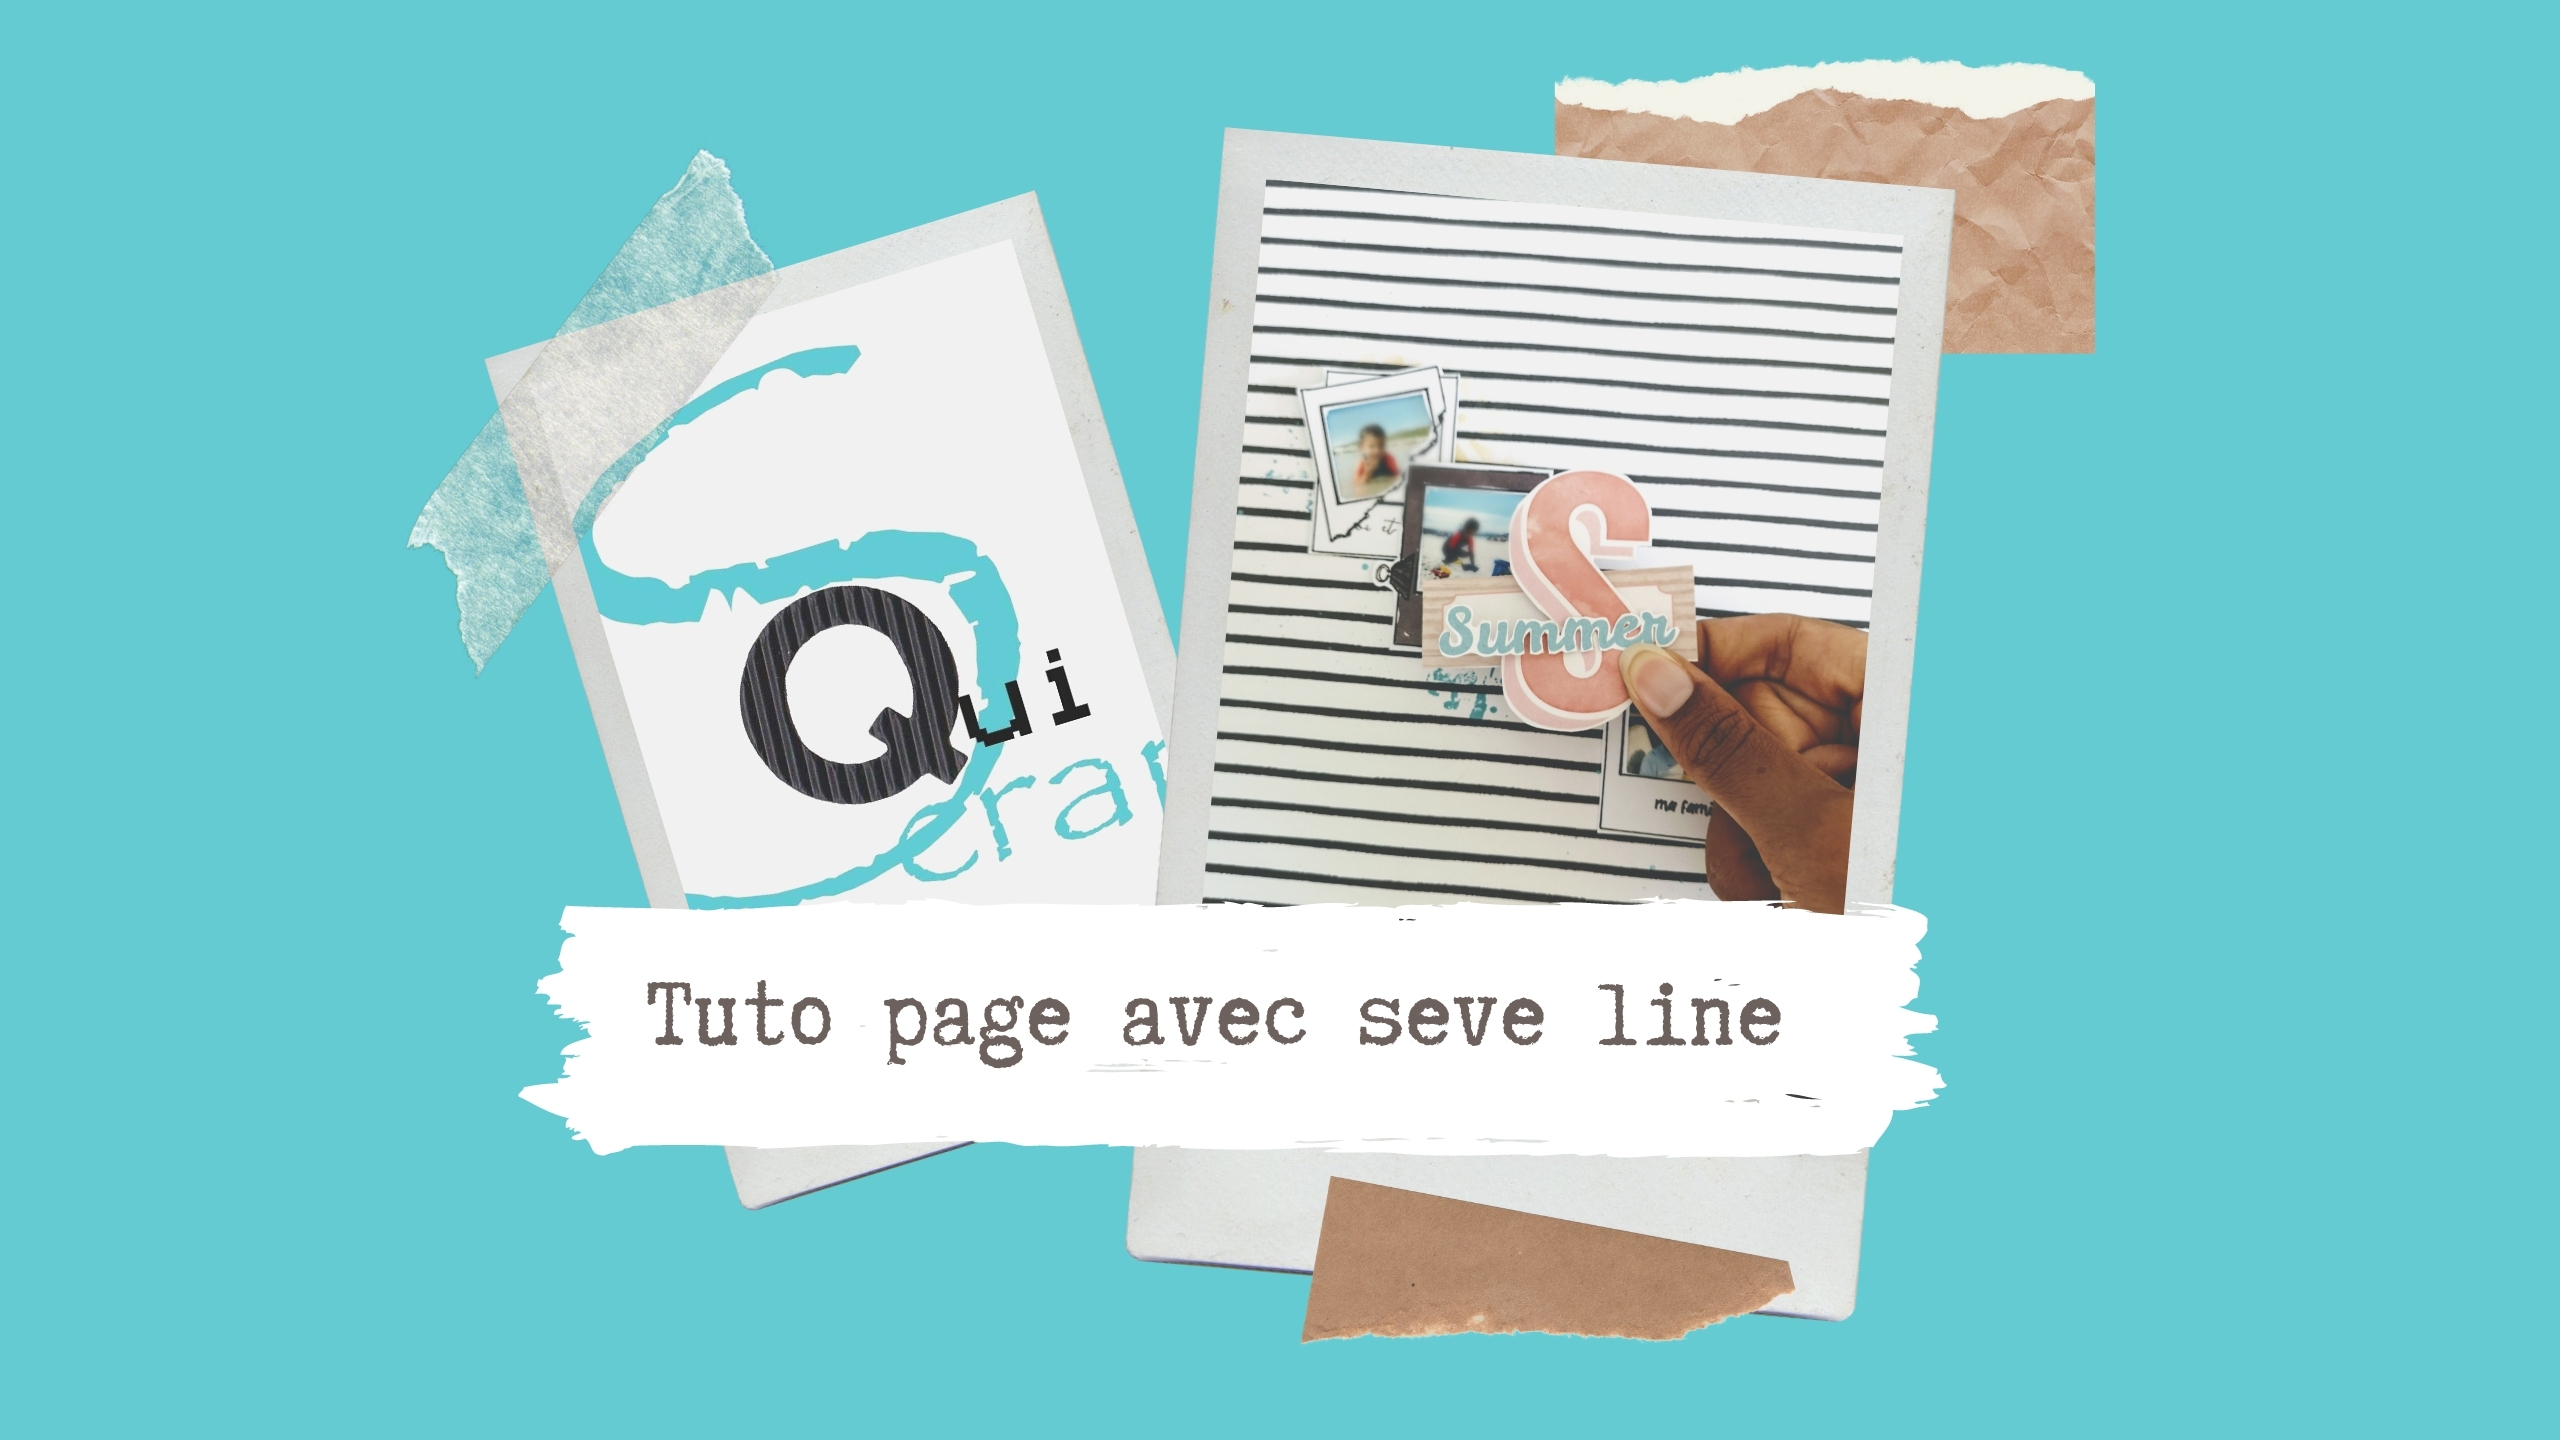 You are currently viewing Tuto n°1 pour la Box de Septembre 2020 par Seve Line: la page